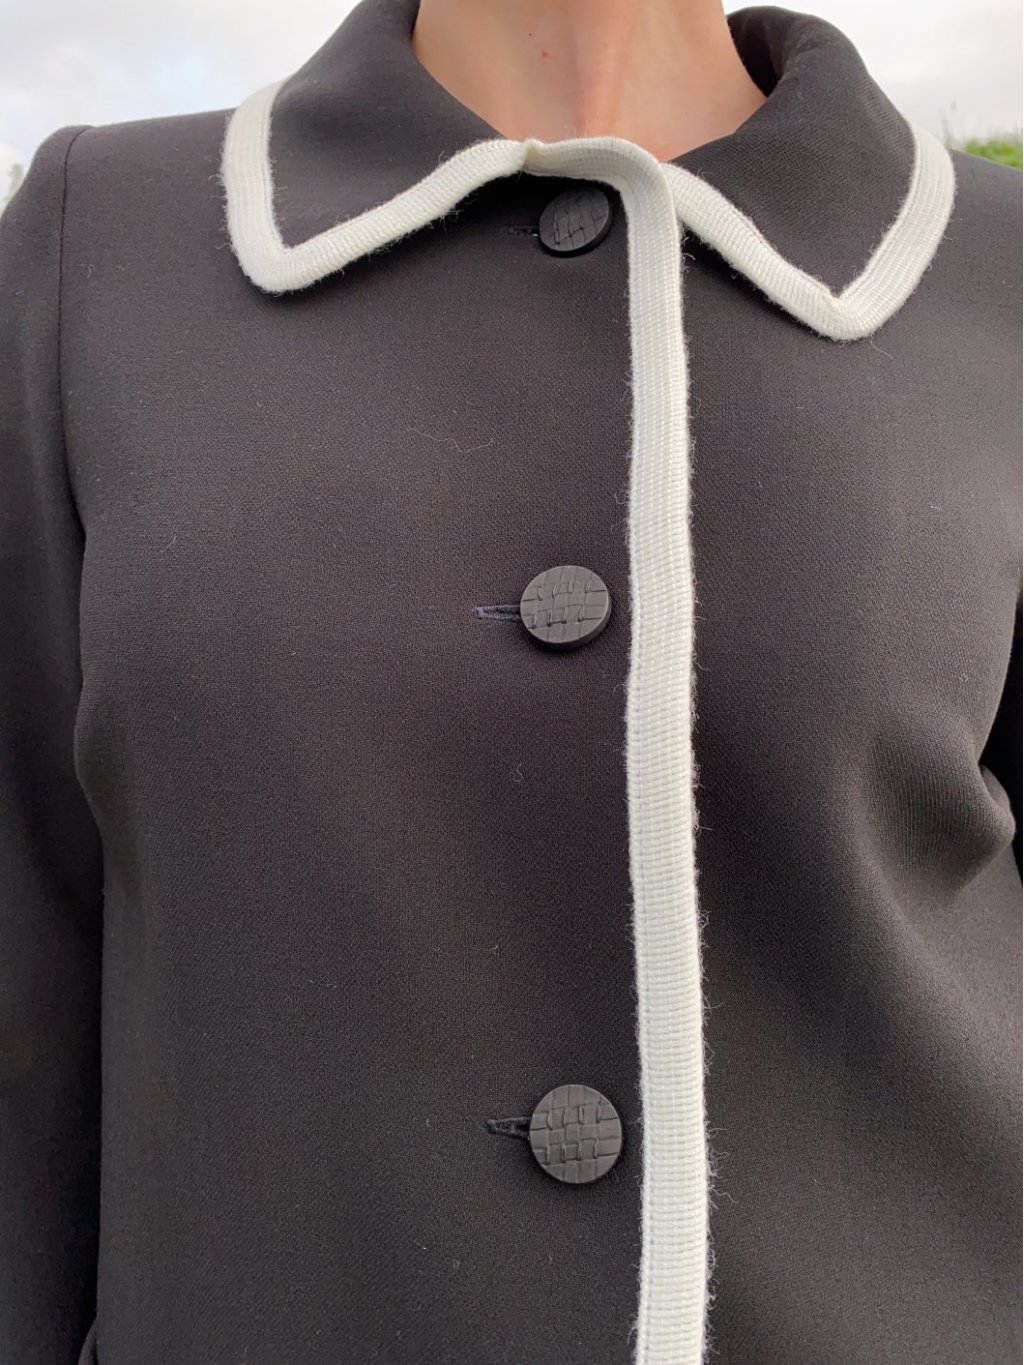 Kabát Estel černý s bílými detaily